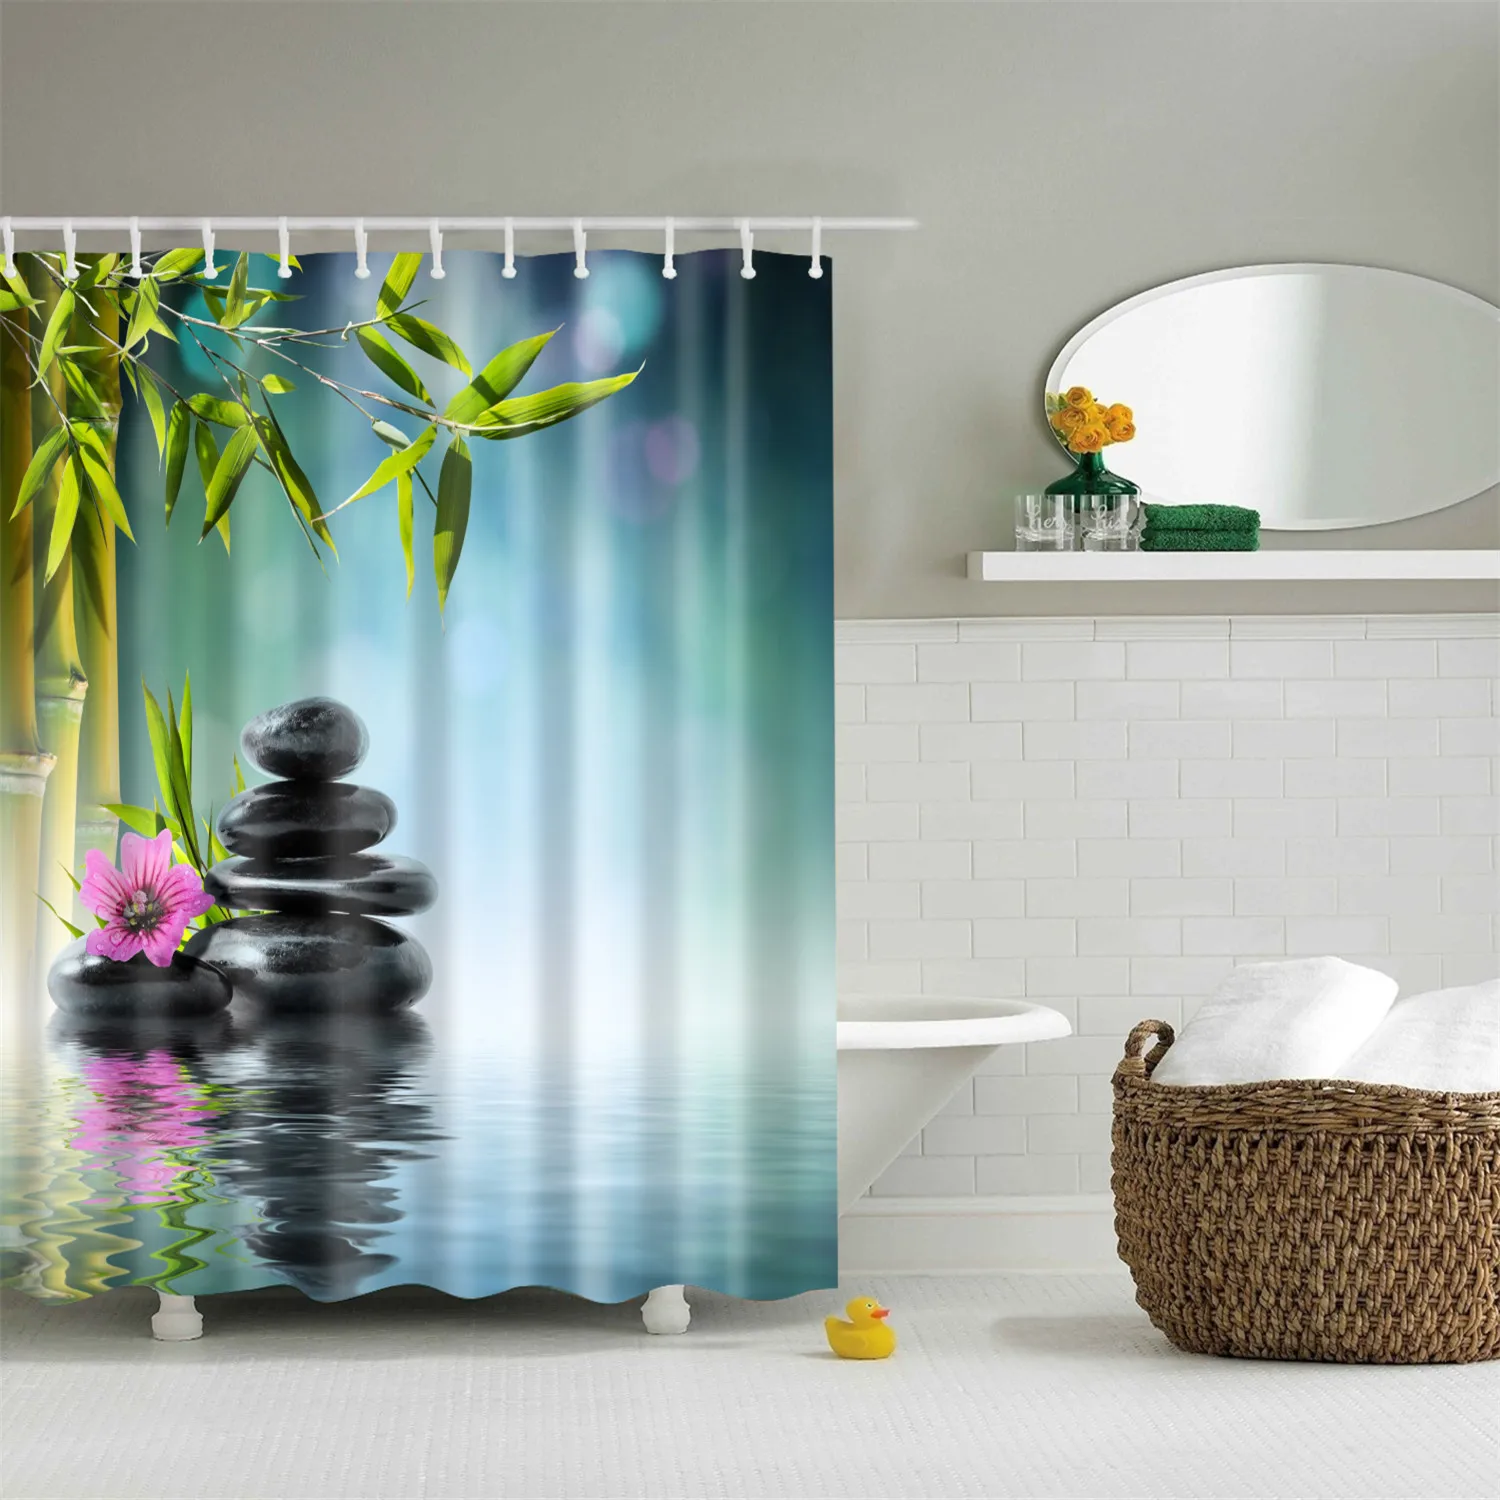 180x200 см индийский Bodhisattva 3D занавеска для ванной Водонепроницаемый полиэстер ткань затемненная Мандала занавеска для душа для ванной комнаты cortina